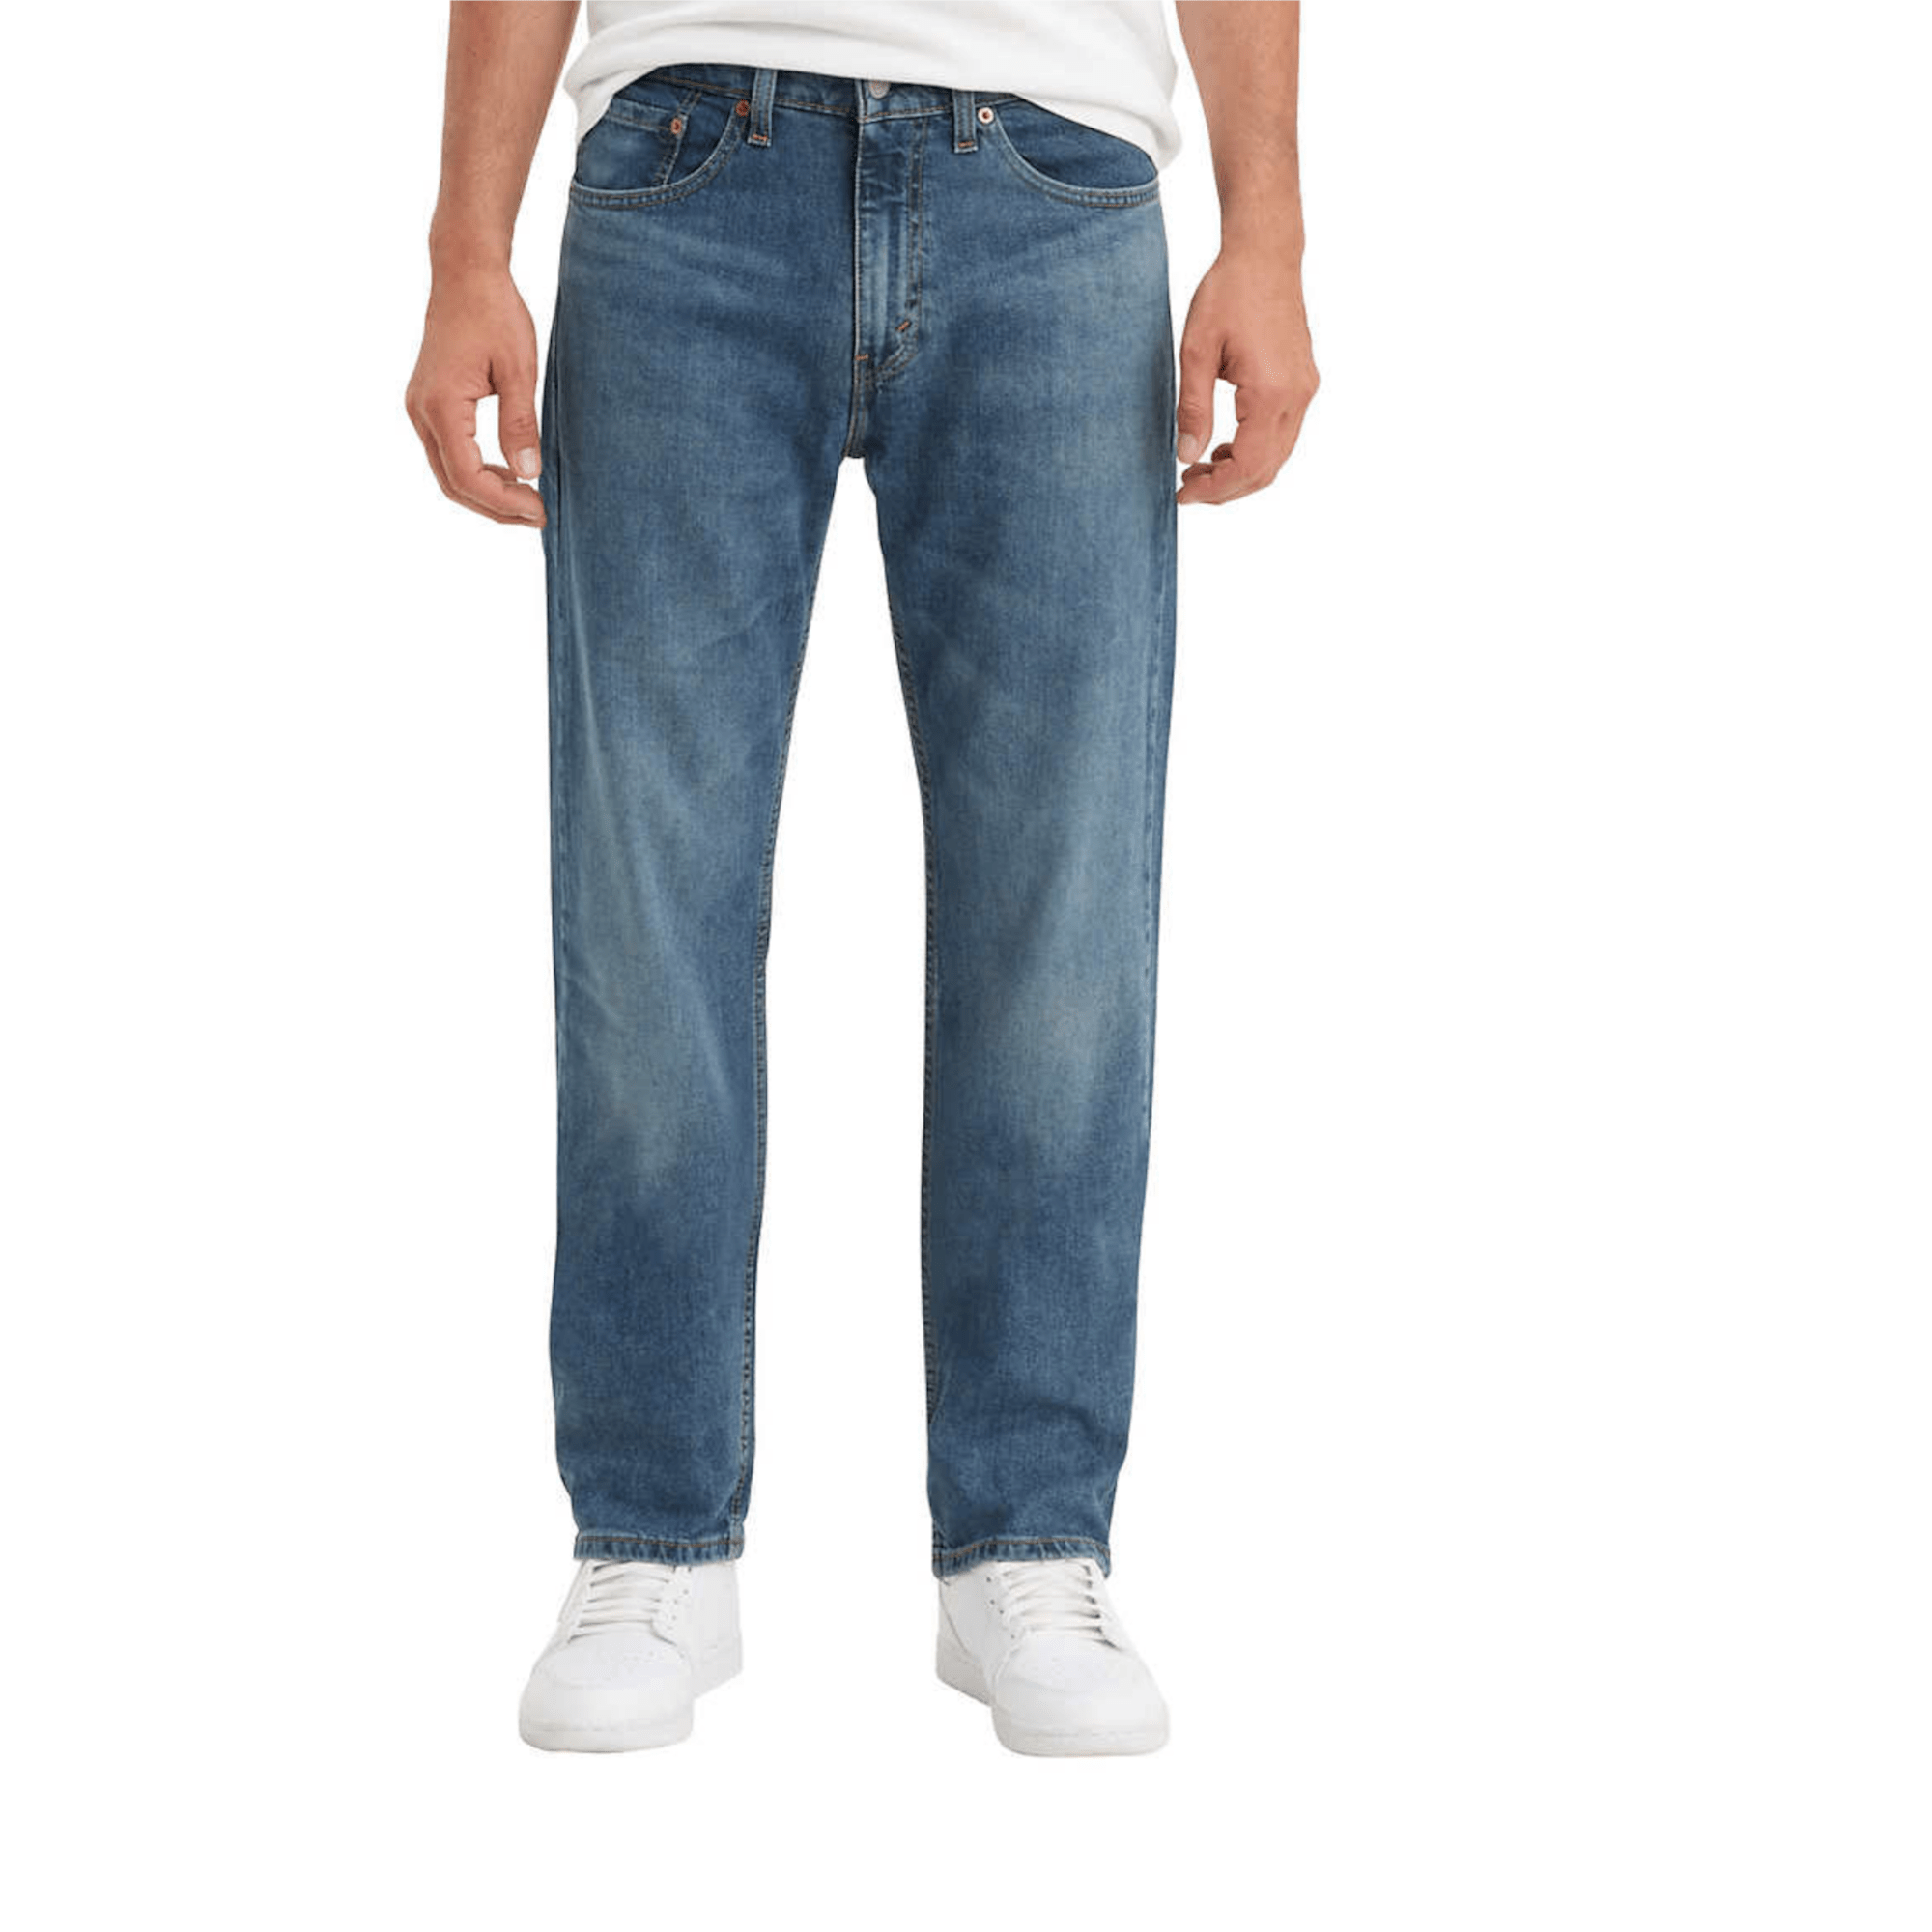 Levi Mens Jeans Pants 505 Relaxed Fit Blue Jeans 36x34 - Levis – Millennial Sales